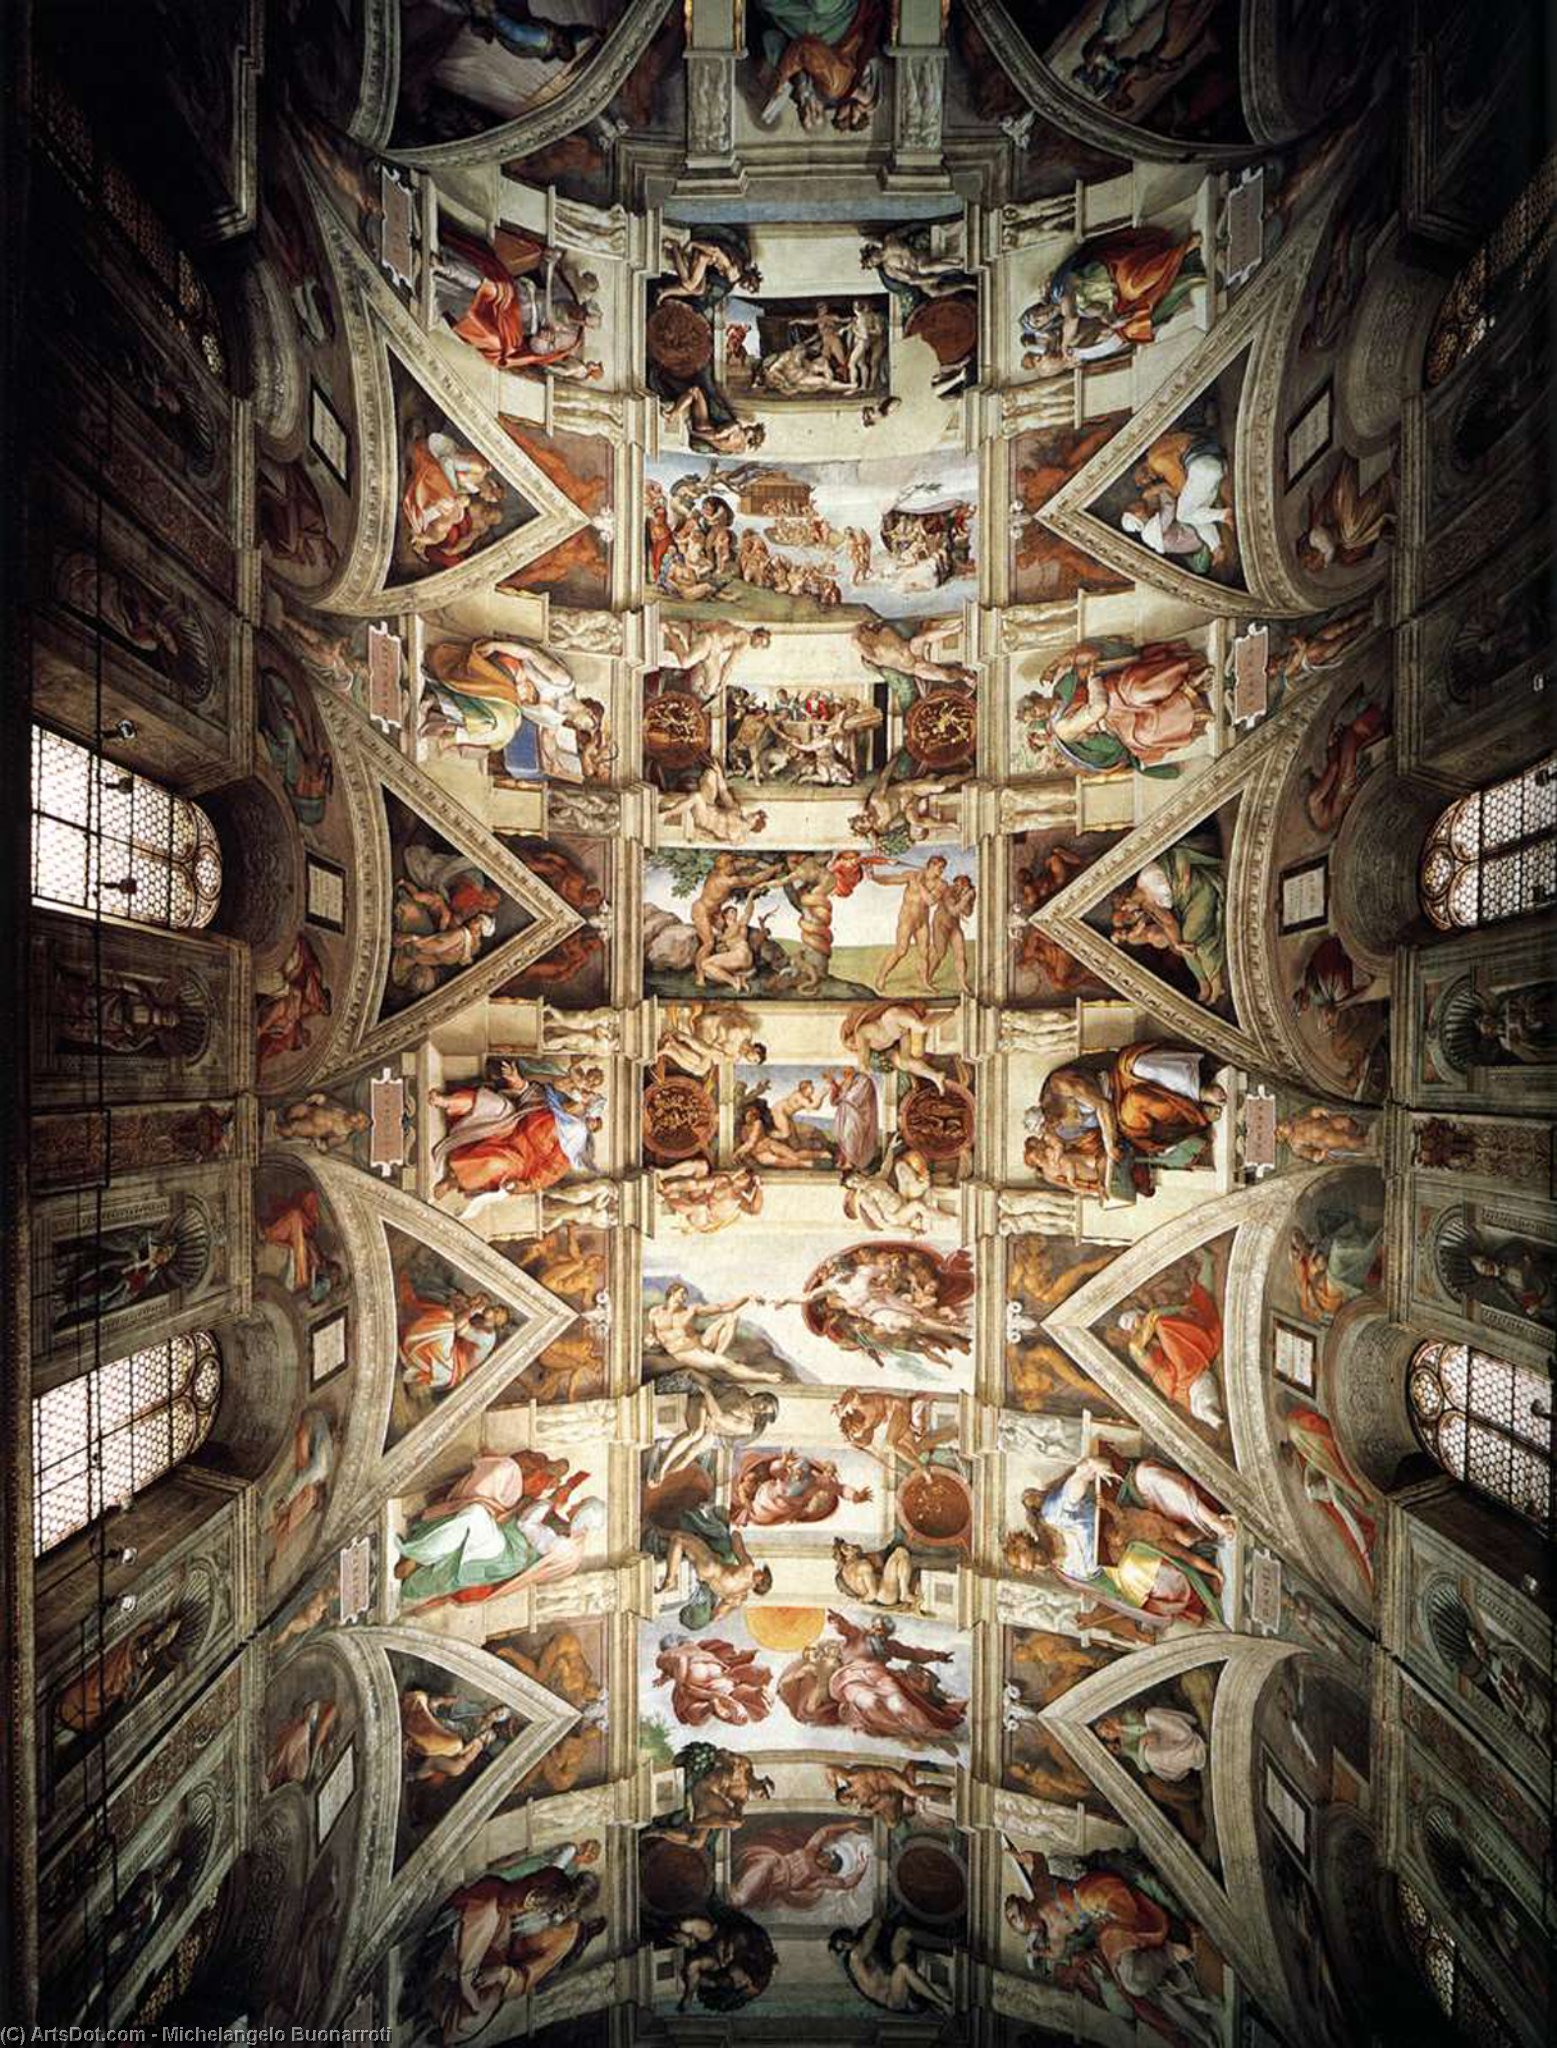 WikiOO.org - Εγκυκλοπαίδεια Καλών Τεχνών - Ζωγραφική, έργα τέχνης Michelangelo Buonarroti - The ceiling